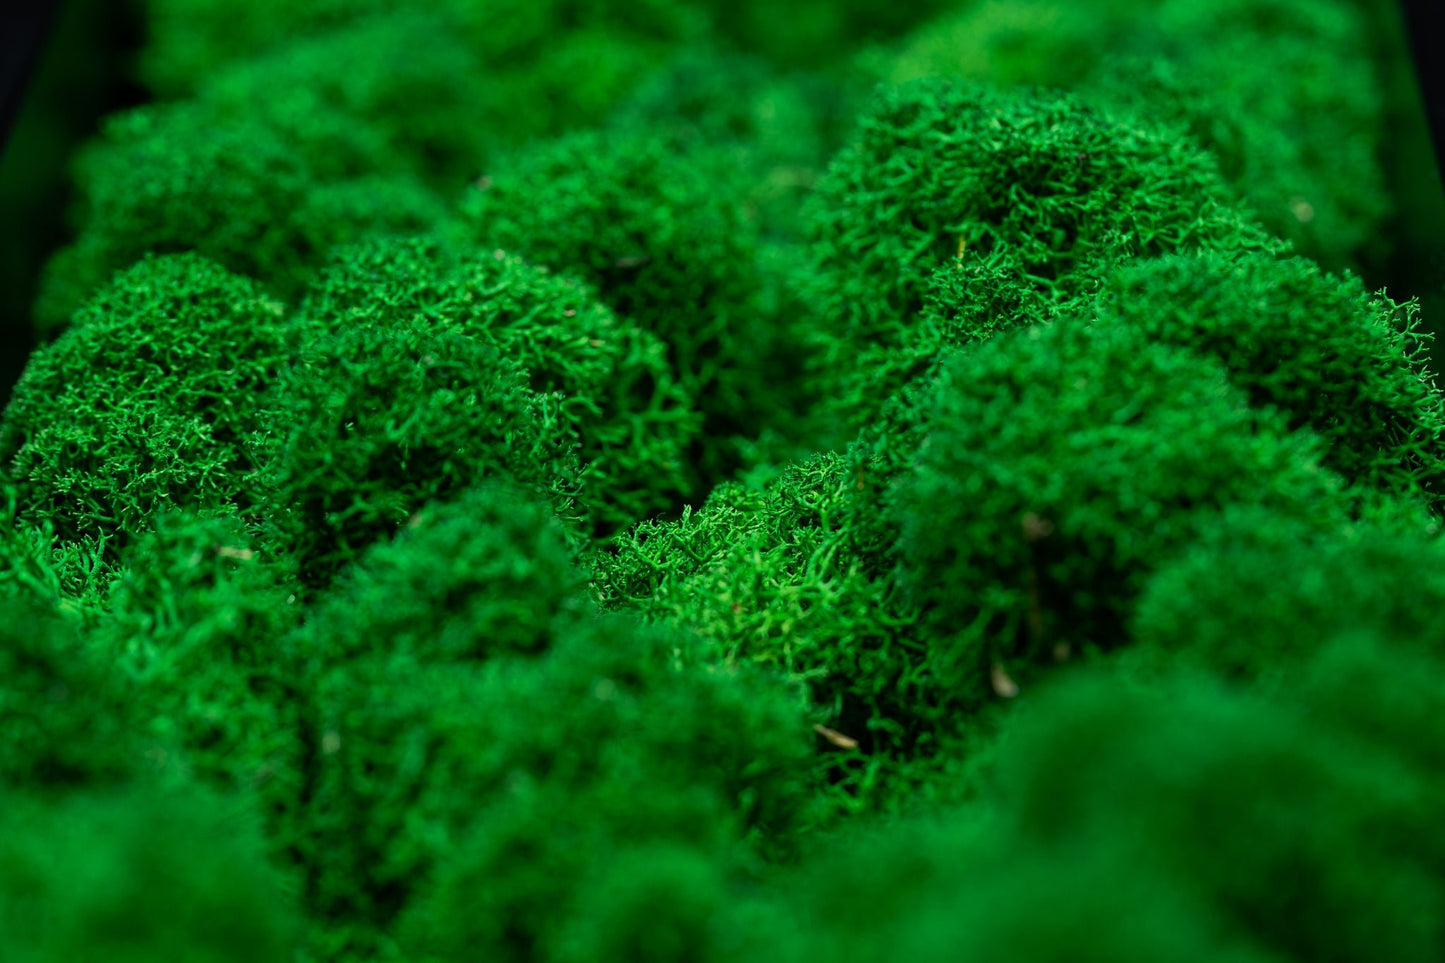 Nærbilde av gressgrønn mose. Frodig og vakkert